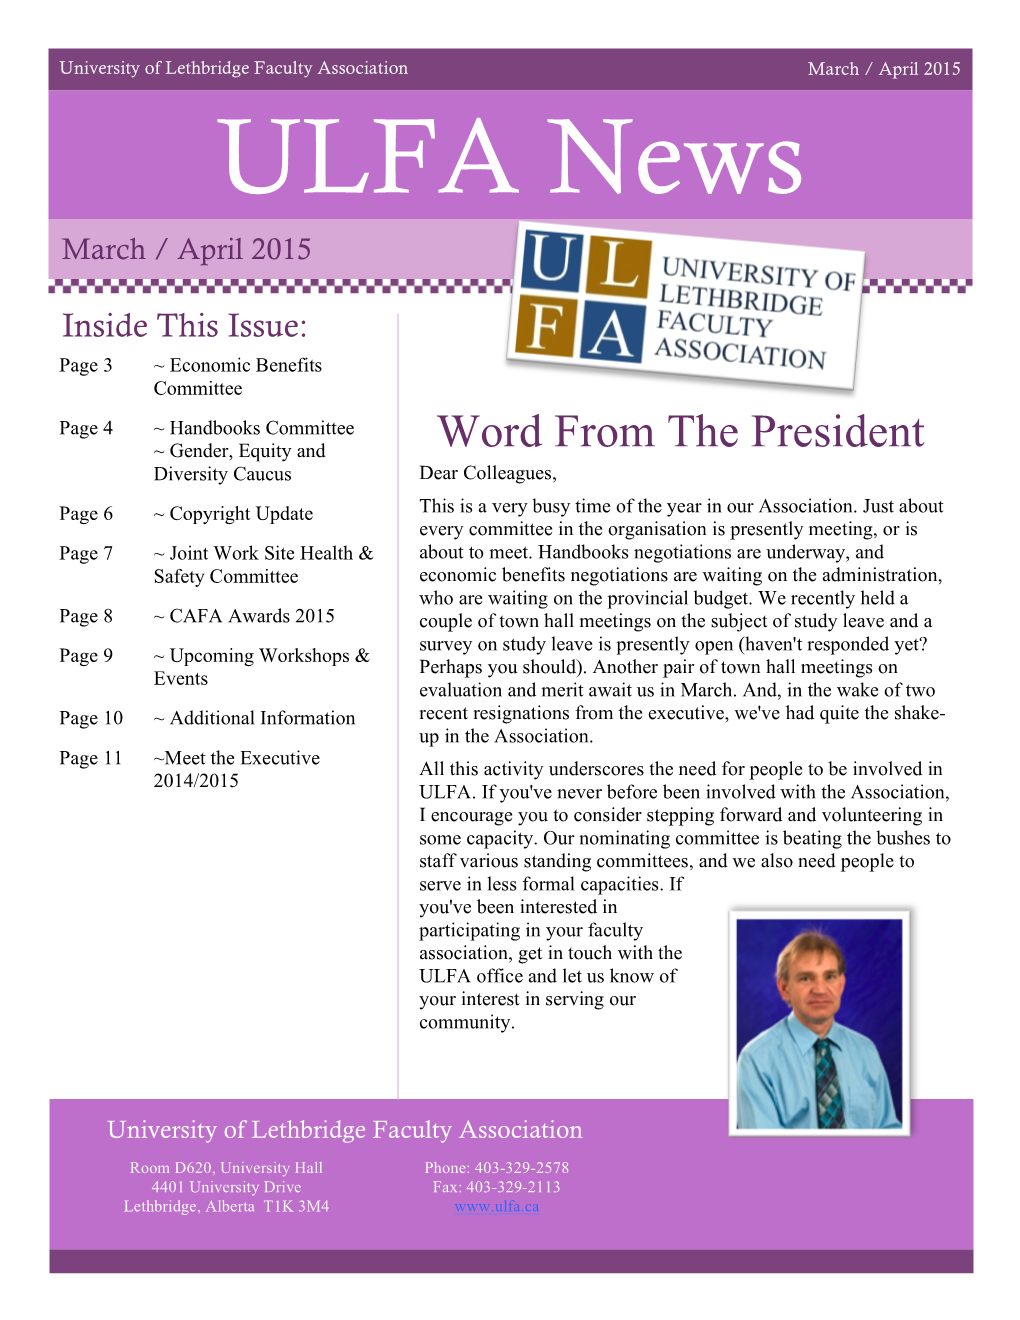 ULFA News March / April 2015